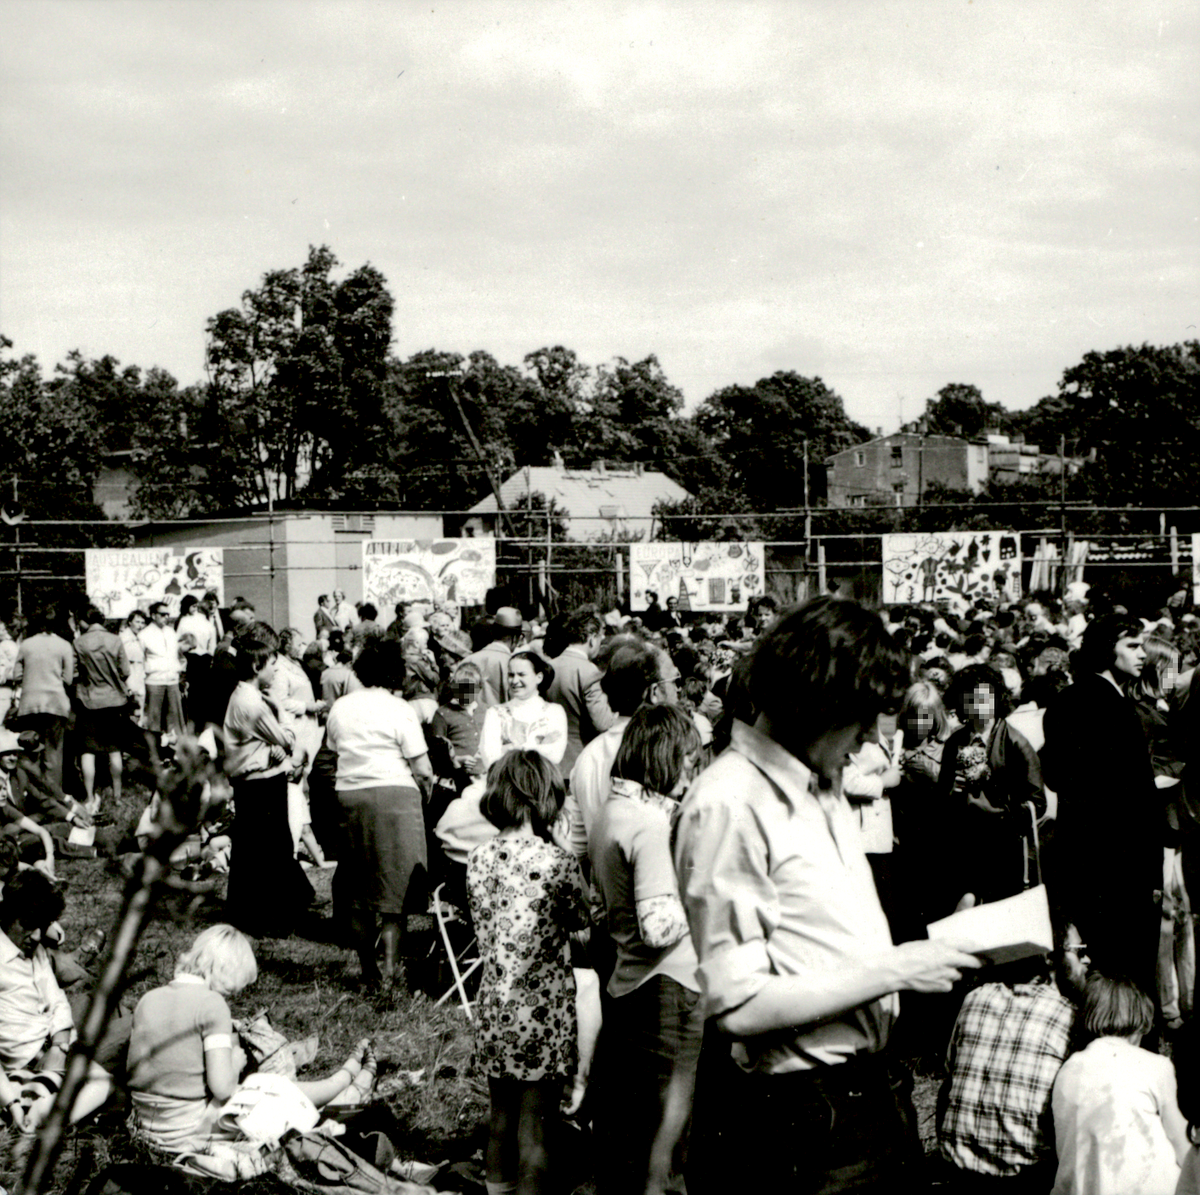 [Das schwarz-weiße Lichtbild zeigt eine Ansammlung von Menschen auf einem freien Platz. Überwiegend stehen die Personen allen Alters auf der Rasenfläche. Im Hintergrund sind kindlich bemalte Transparente an Zäunen angebracht.]